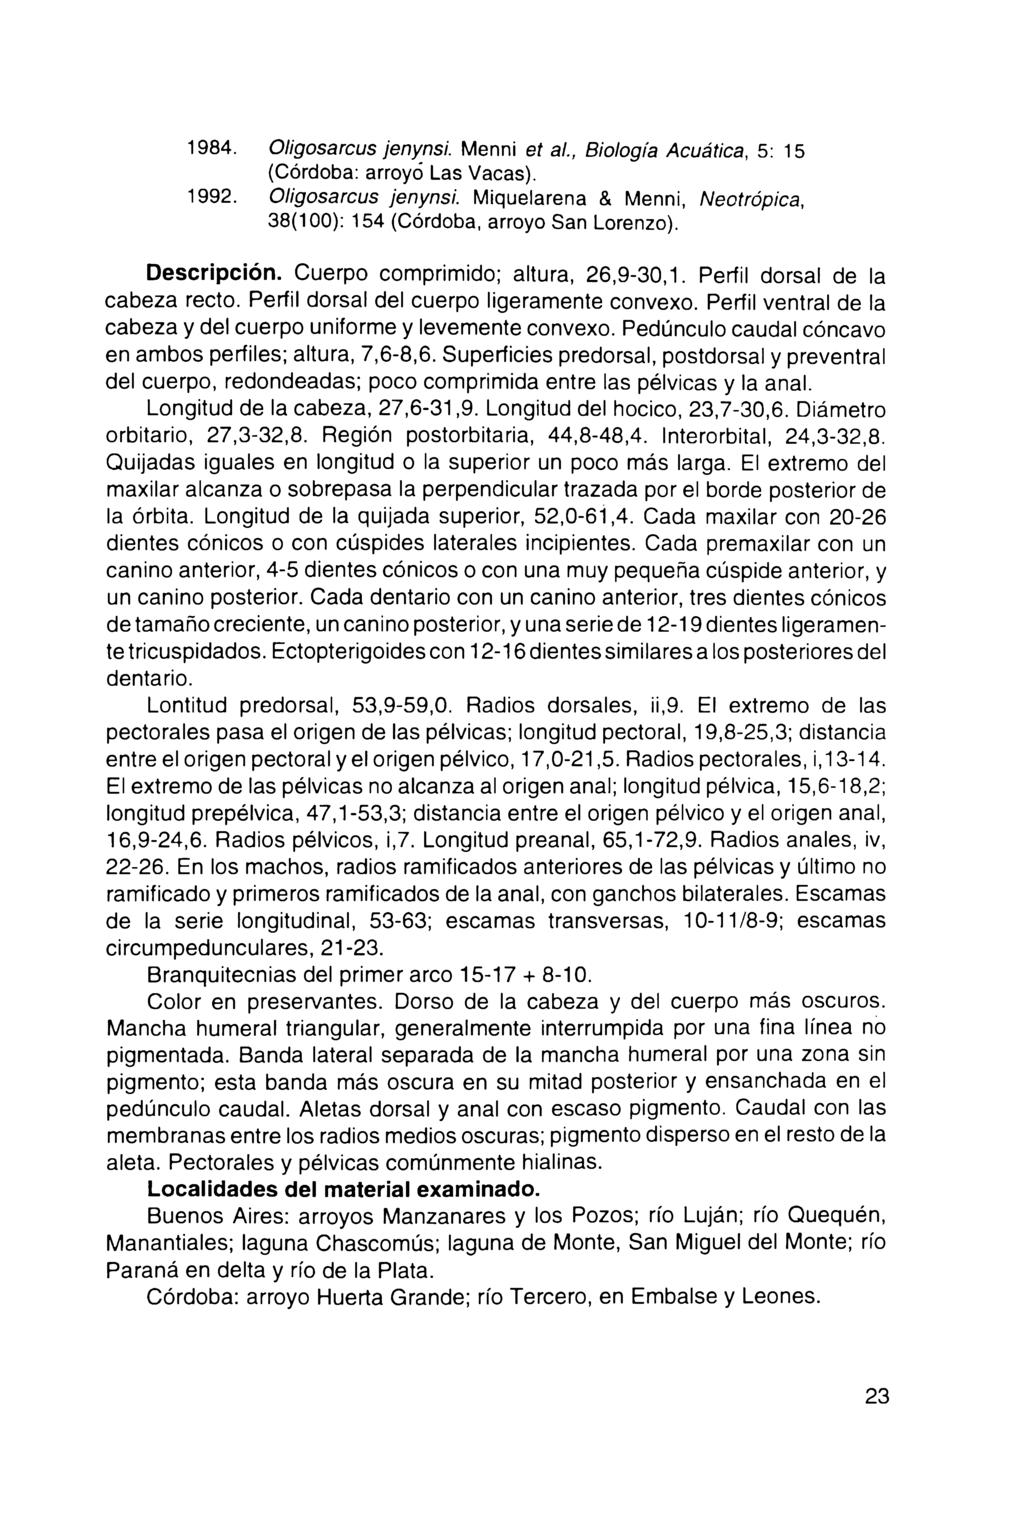 1984. Oligosarcus jenynsi. Menni et al., Biología Acuática, 5: 15 (Córdoba: arroyó Las Vacas). 1992. Oligosarcus jenynsi. Miquelarena & Menni, Neotrópica, 38(100): 154 (Córdoba, arroyo San Lorenzo).